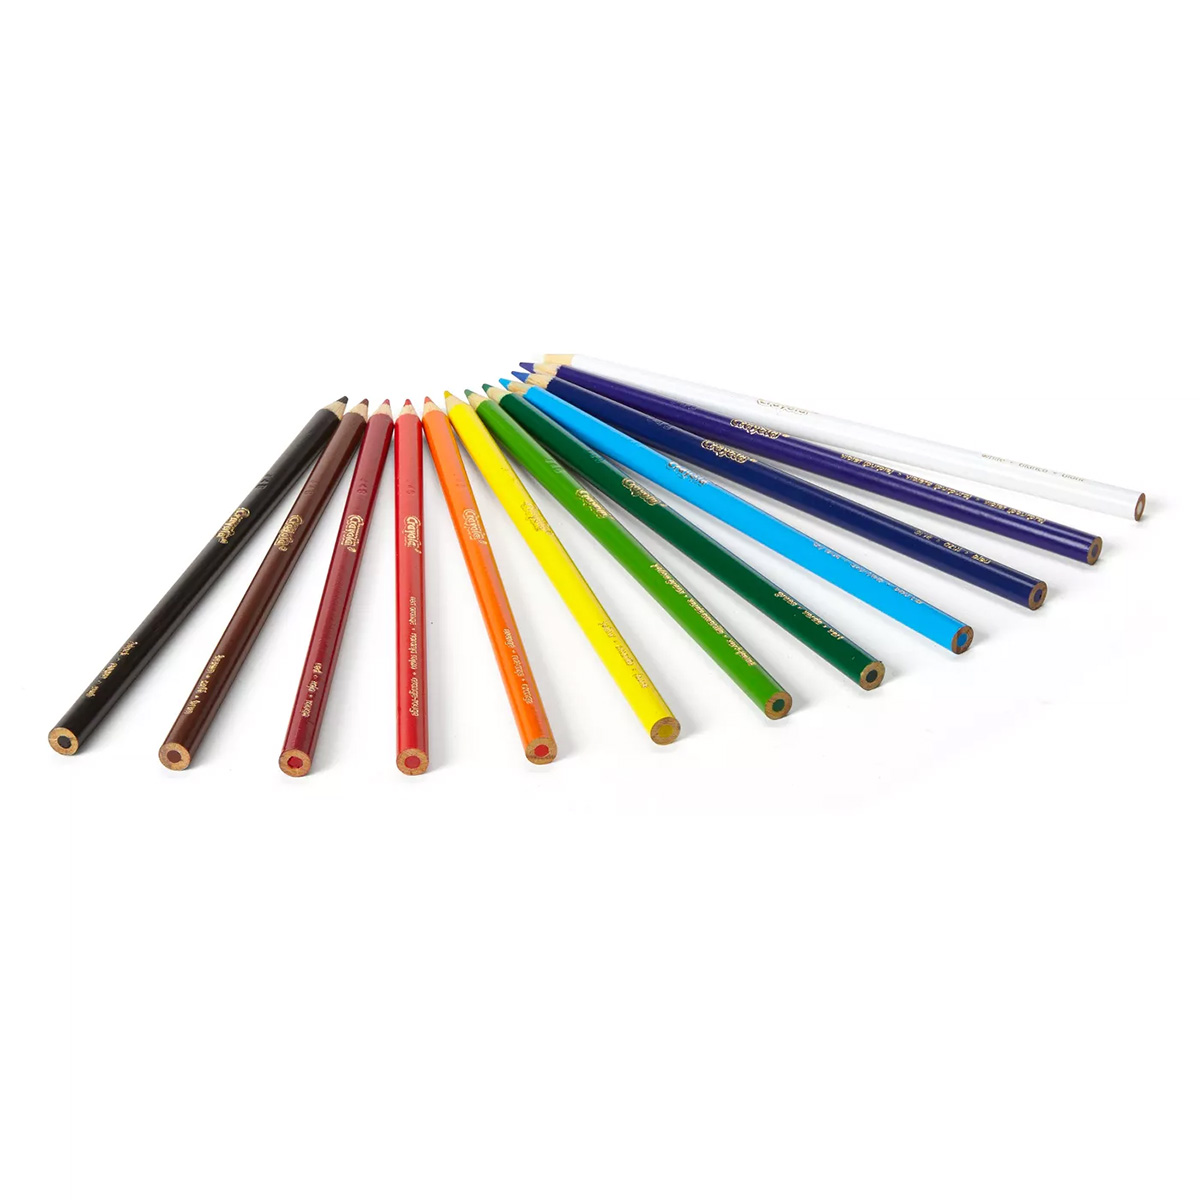 Crayola Erasable Colored Pencils, 12 Ct.